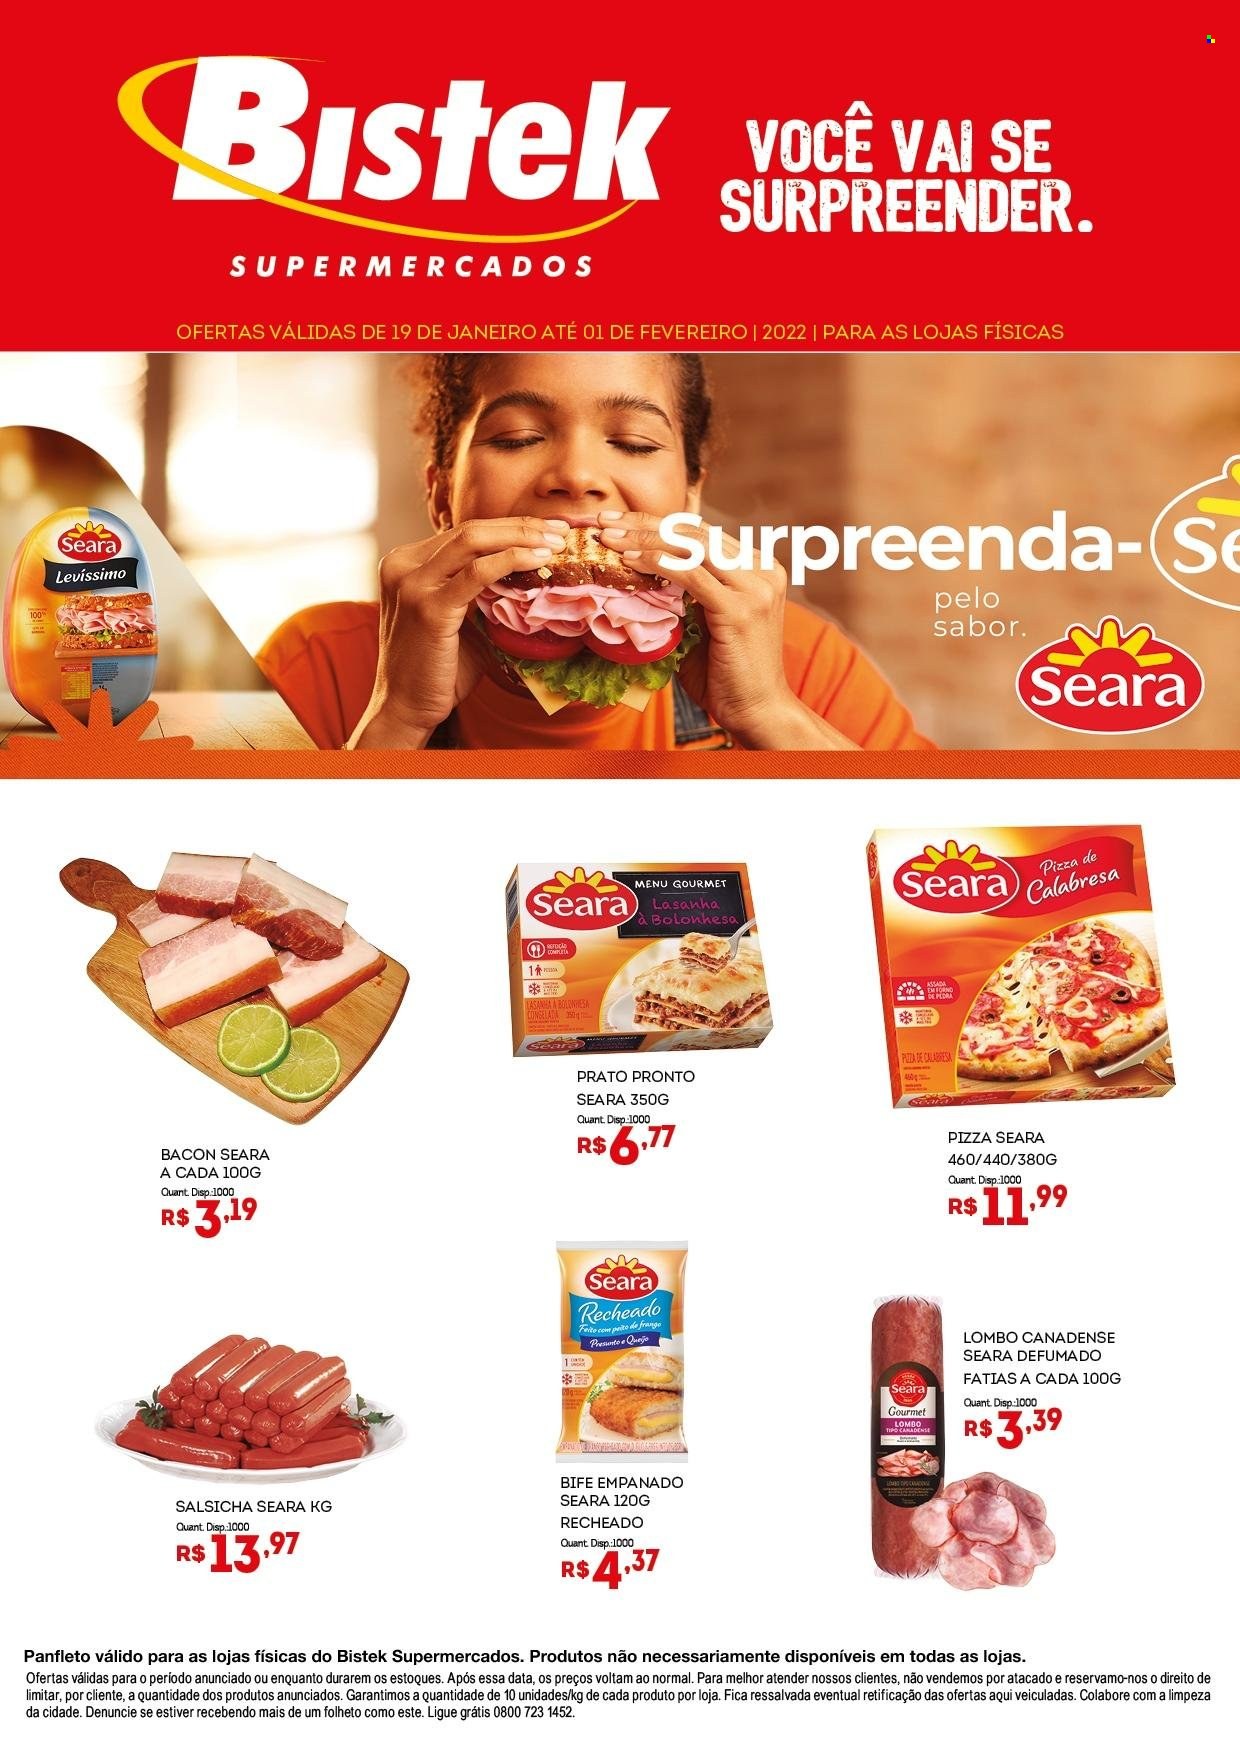 thumbnail - Folheto Bistek Supermercados - 19/01/2022 - 01/02/2022 - Produtos em promoção - bife, lombo, pizza, lasanha, prato pronto, salsicha, prato. Página 1.